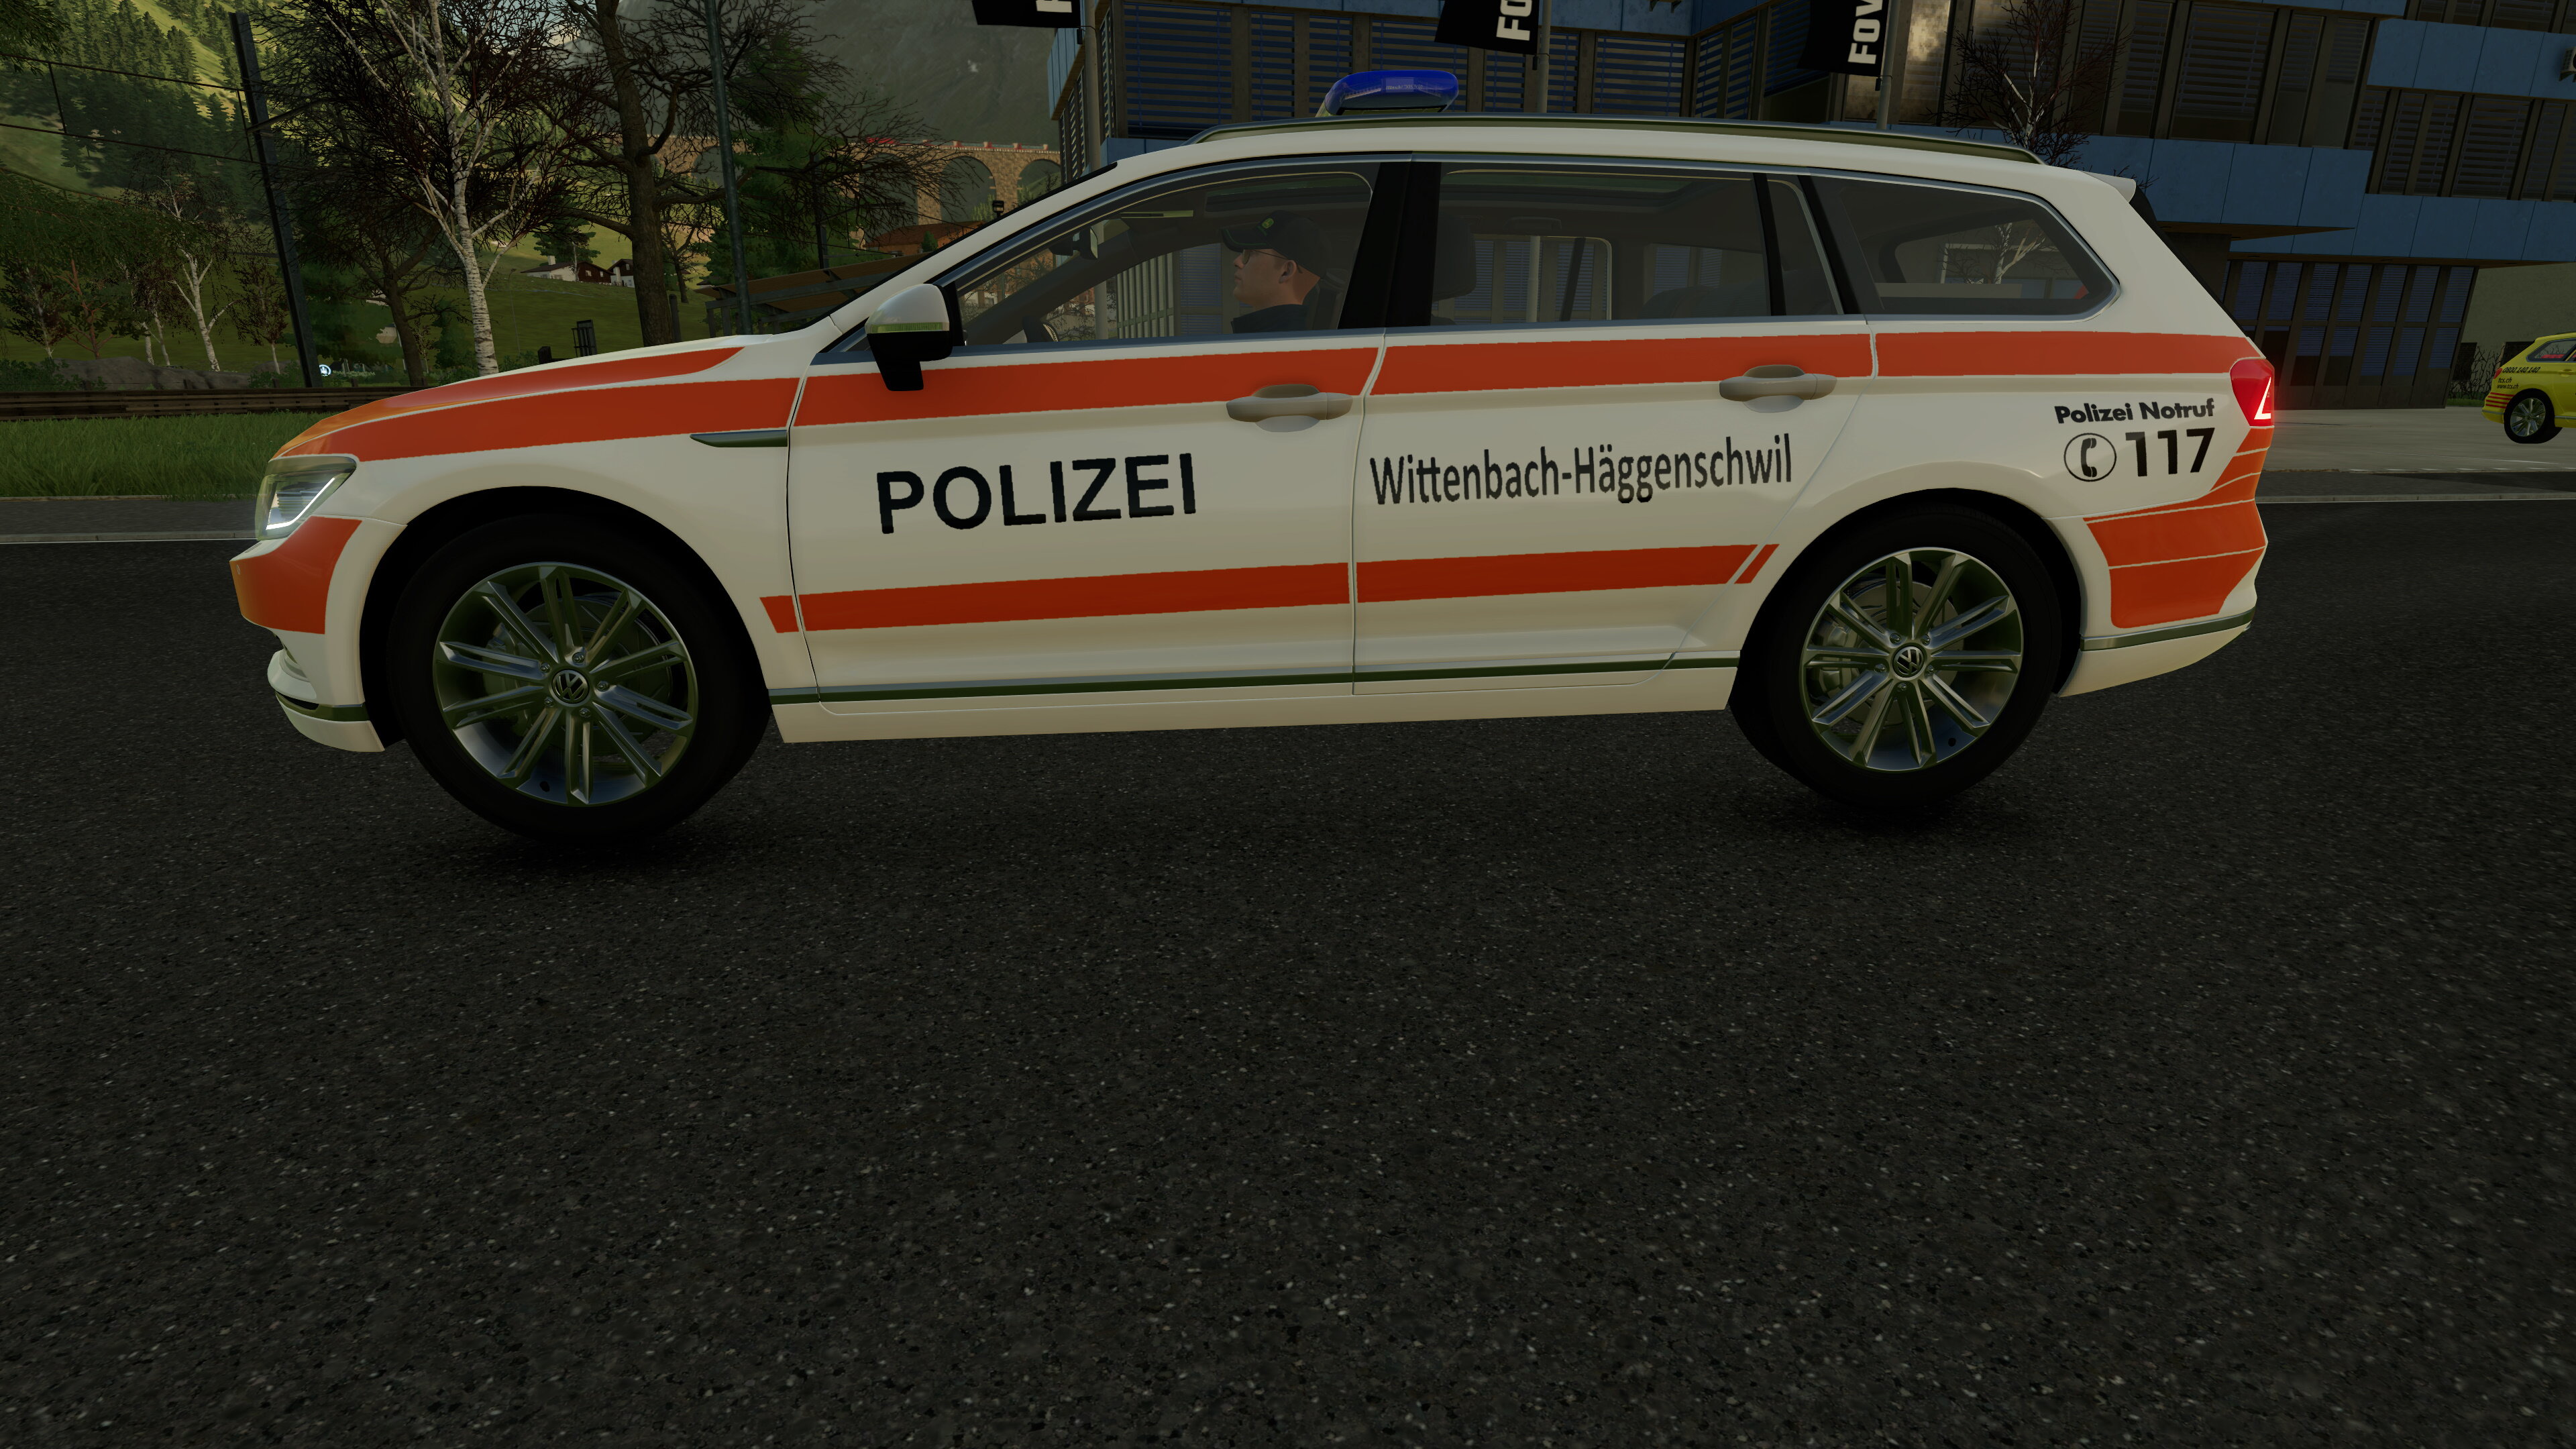 Polizei wittenbach häggenschwil Schweiz